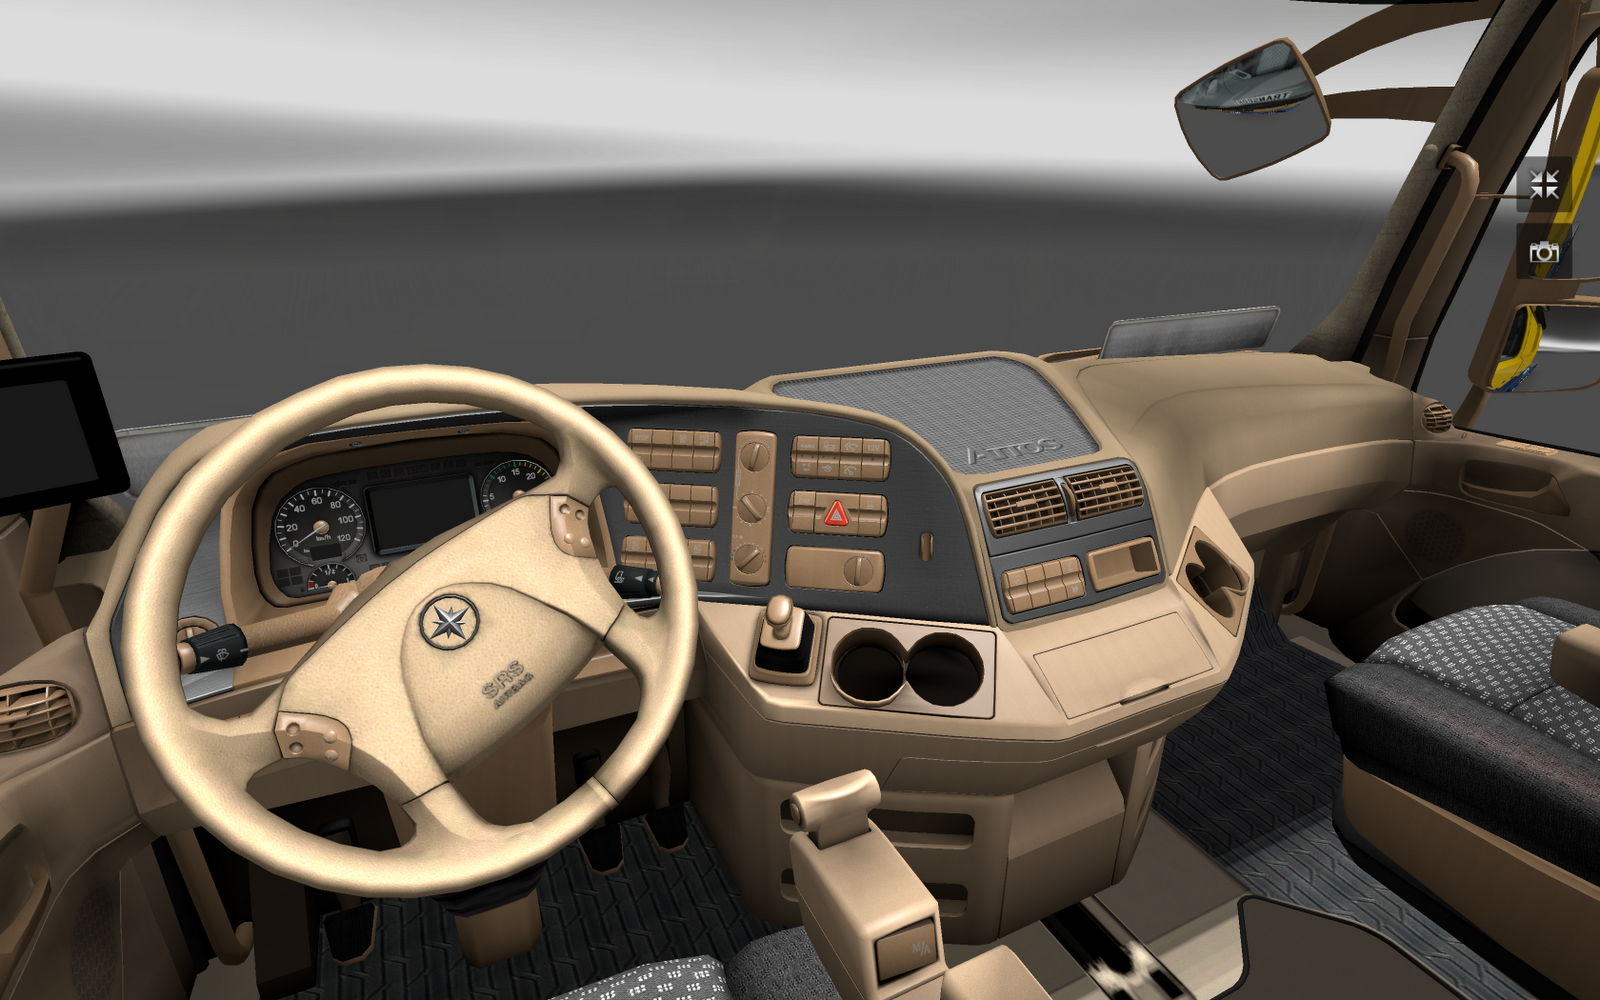 MTRMARIVALDOTADEU Euro Truck Simulator 2 Interior